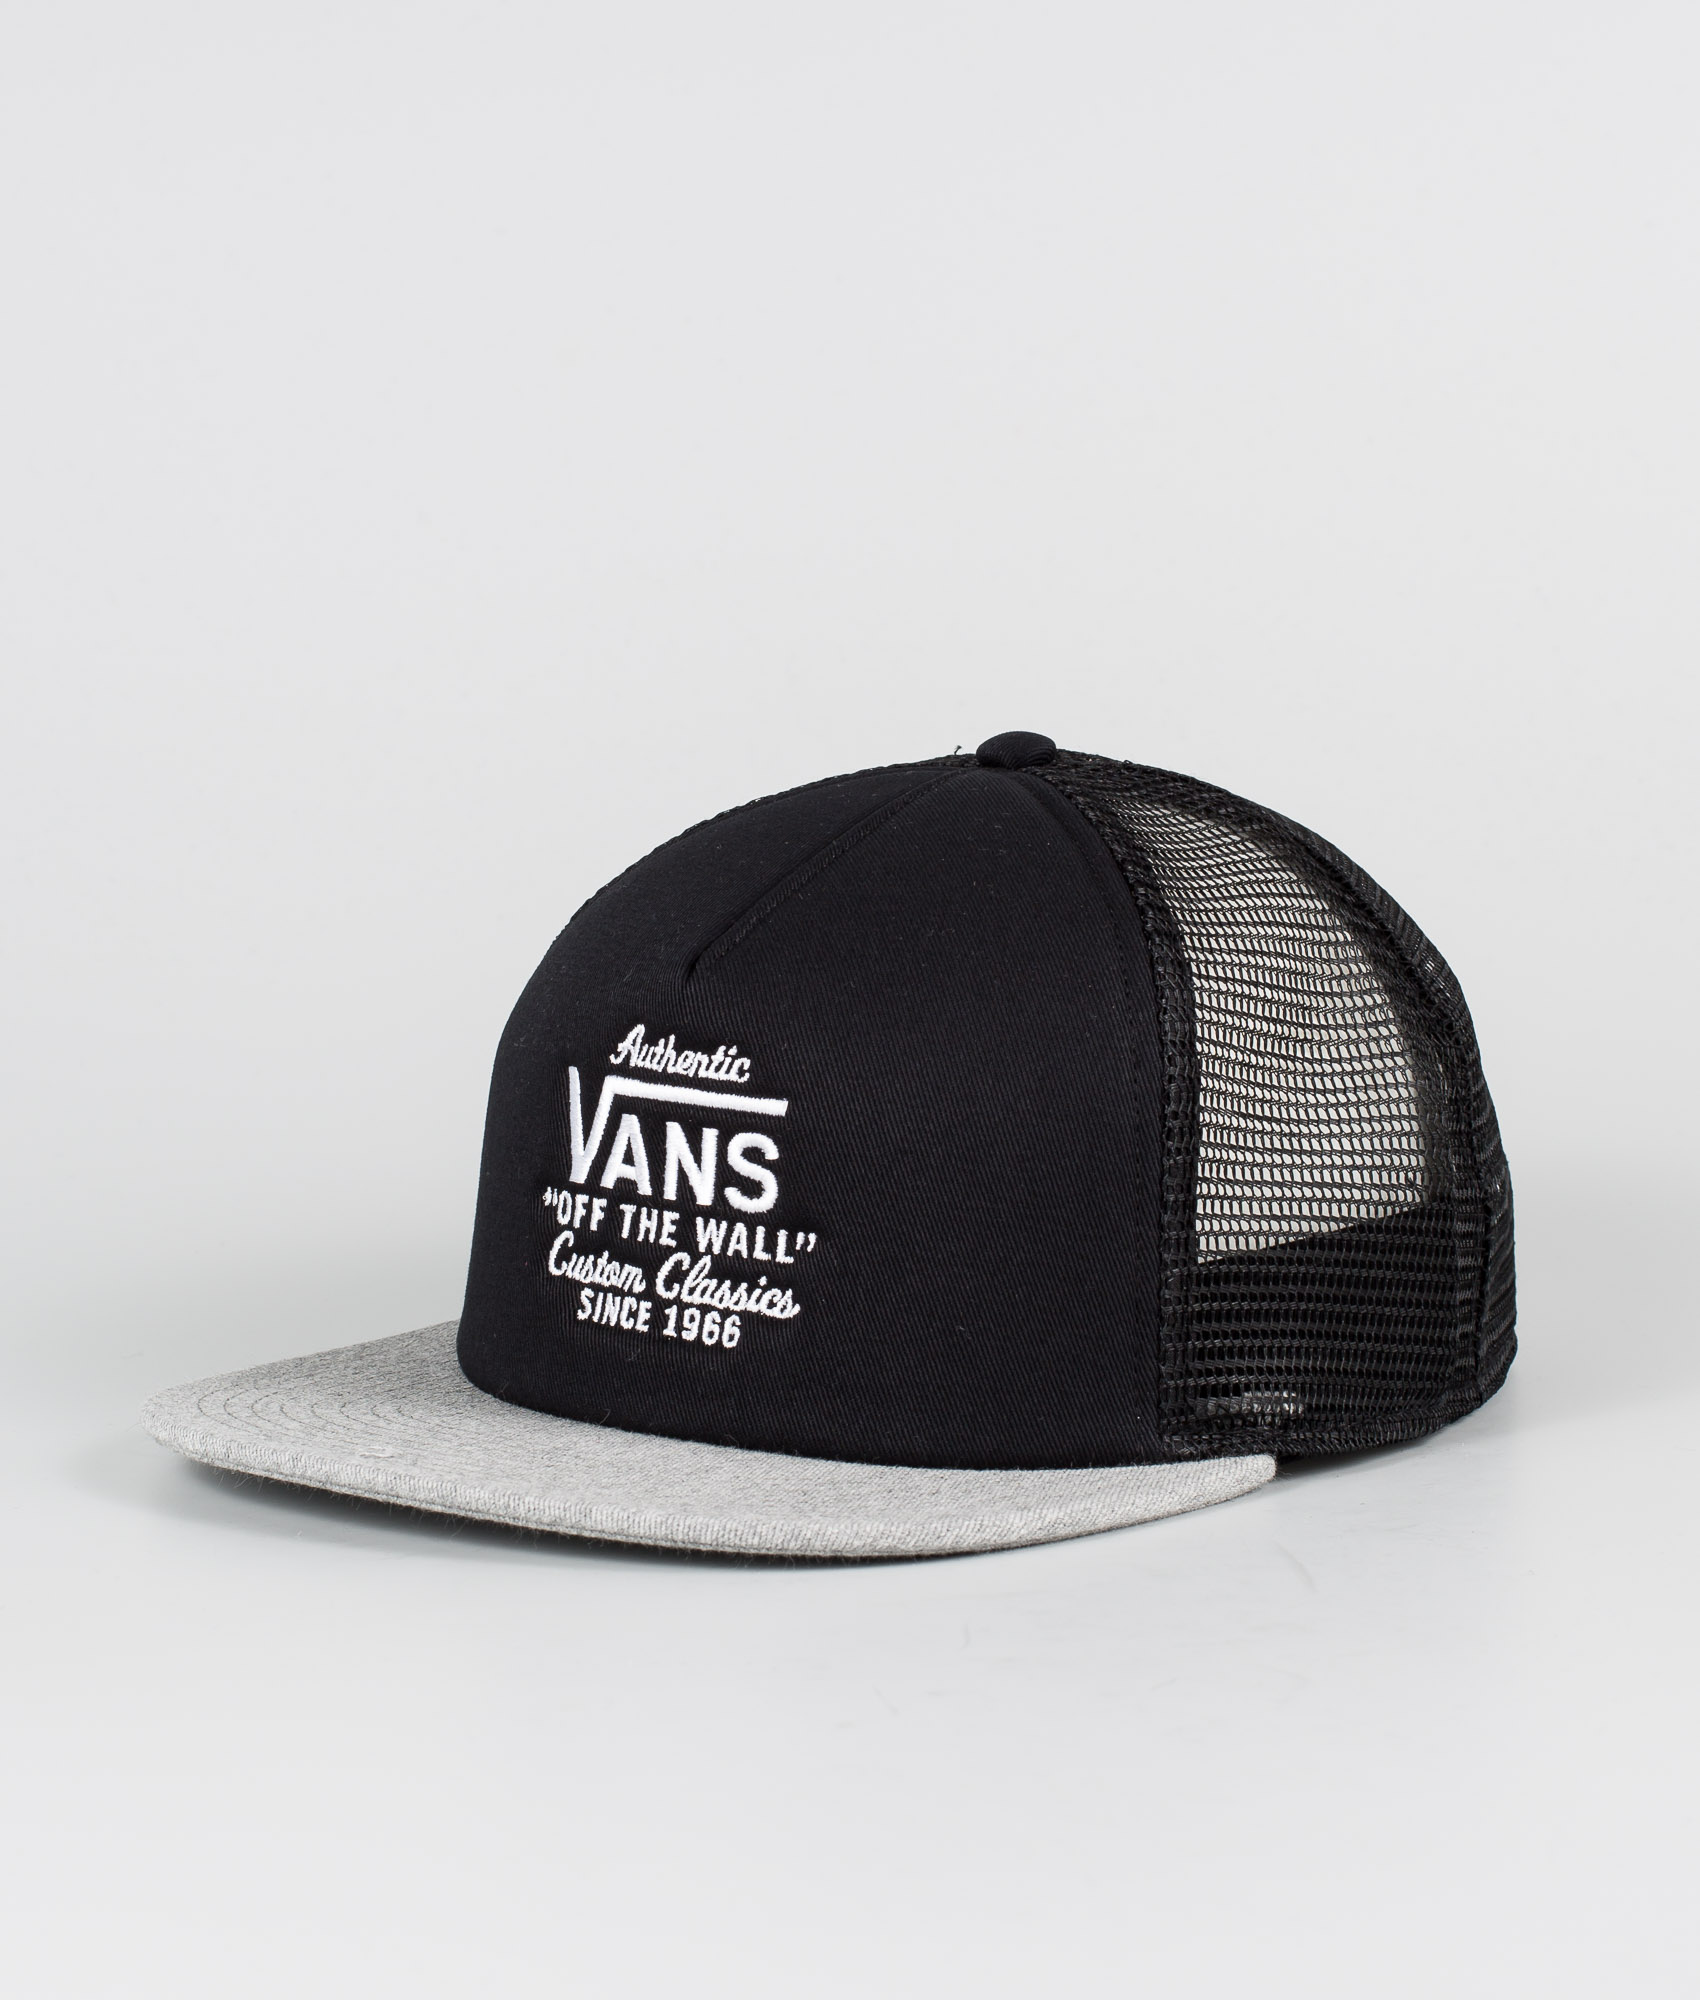 vans grey hat